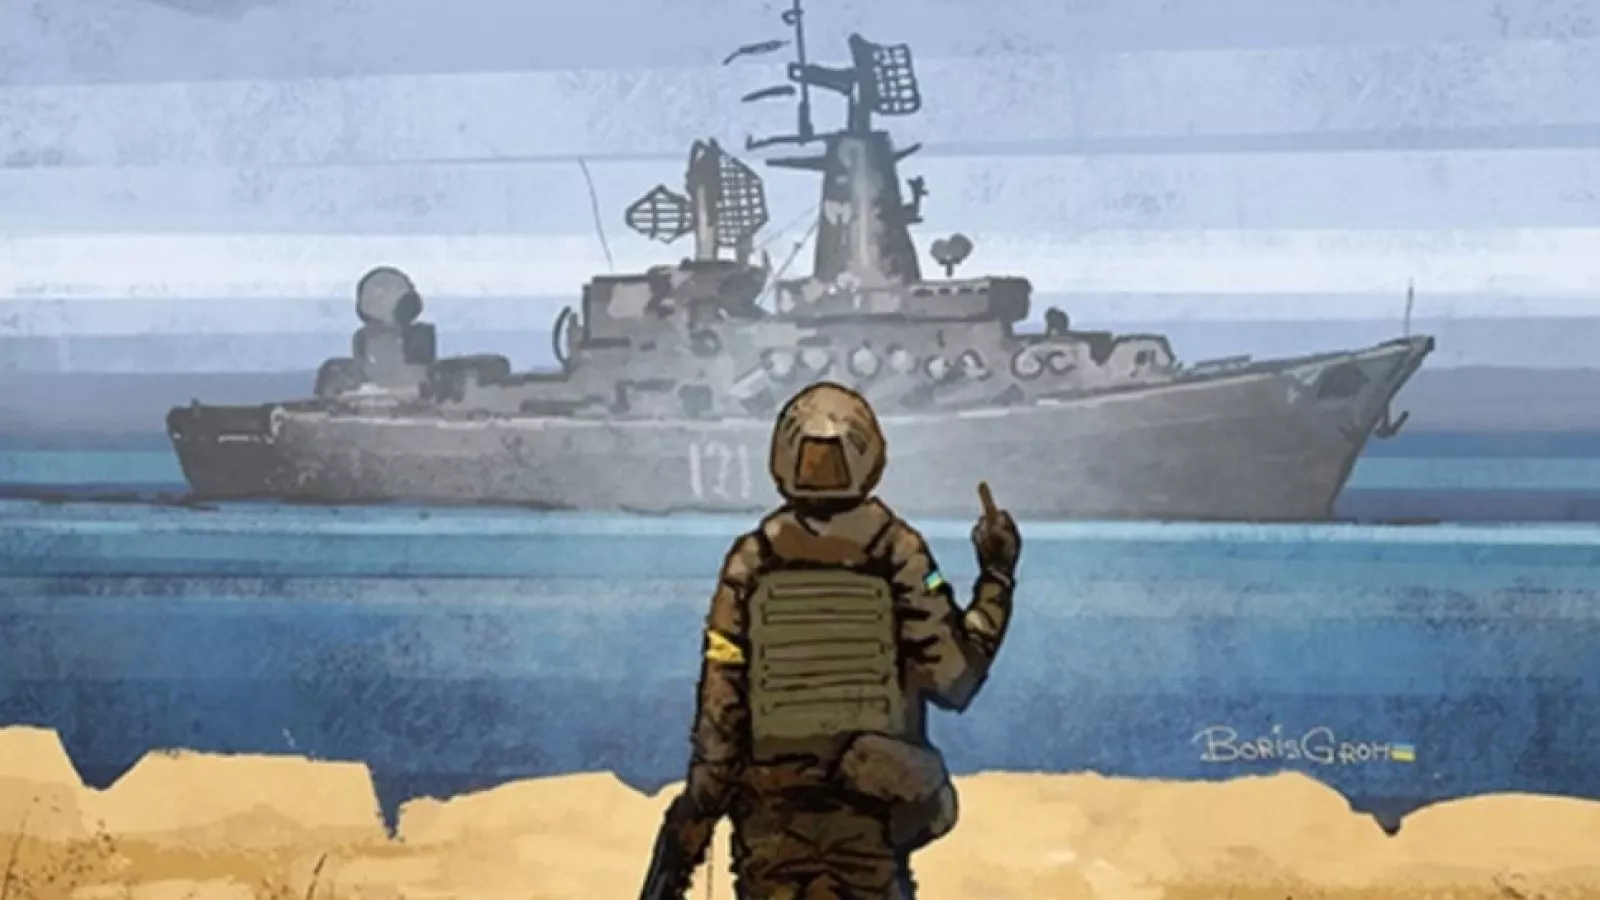 Фраза, ставшая не просто мемом, а целой легендой, вдохновила Укрпошту выпустить по этому случаю вторую серию марки – 23 мая, в день морской пехоты